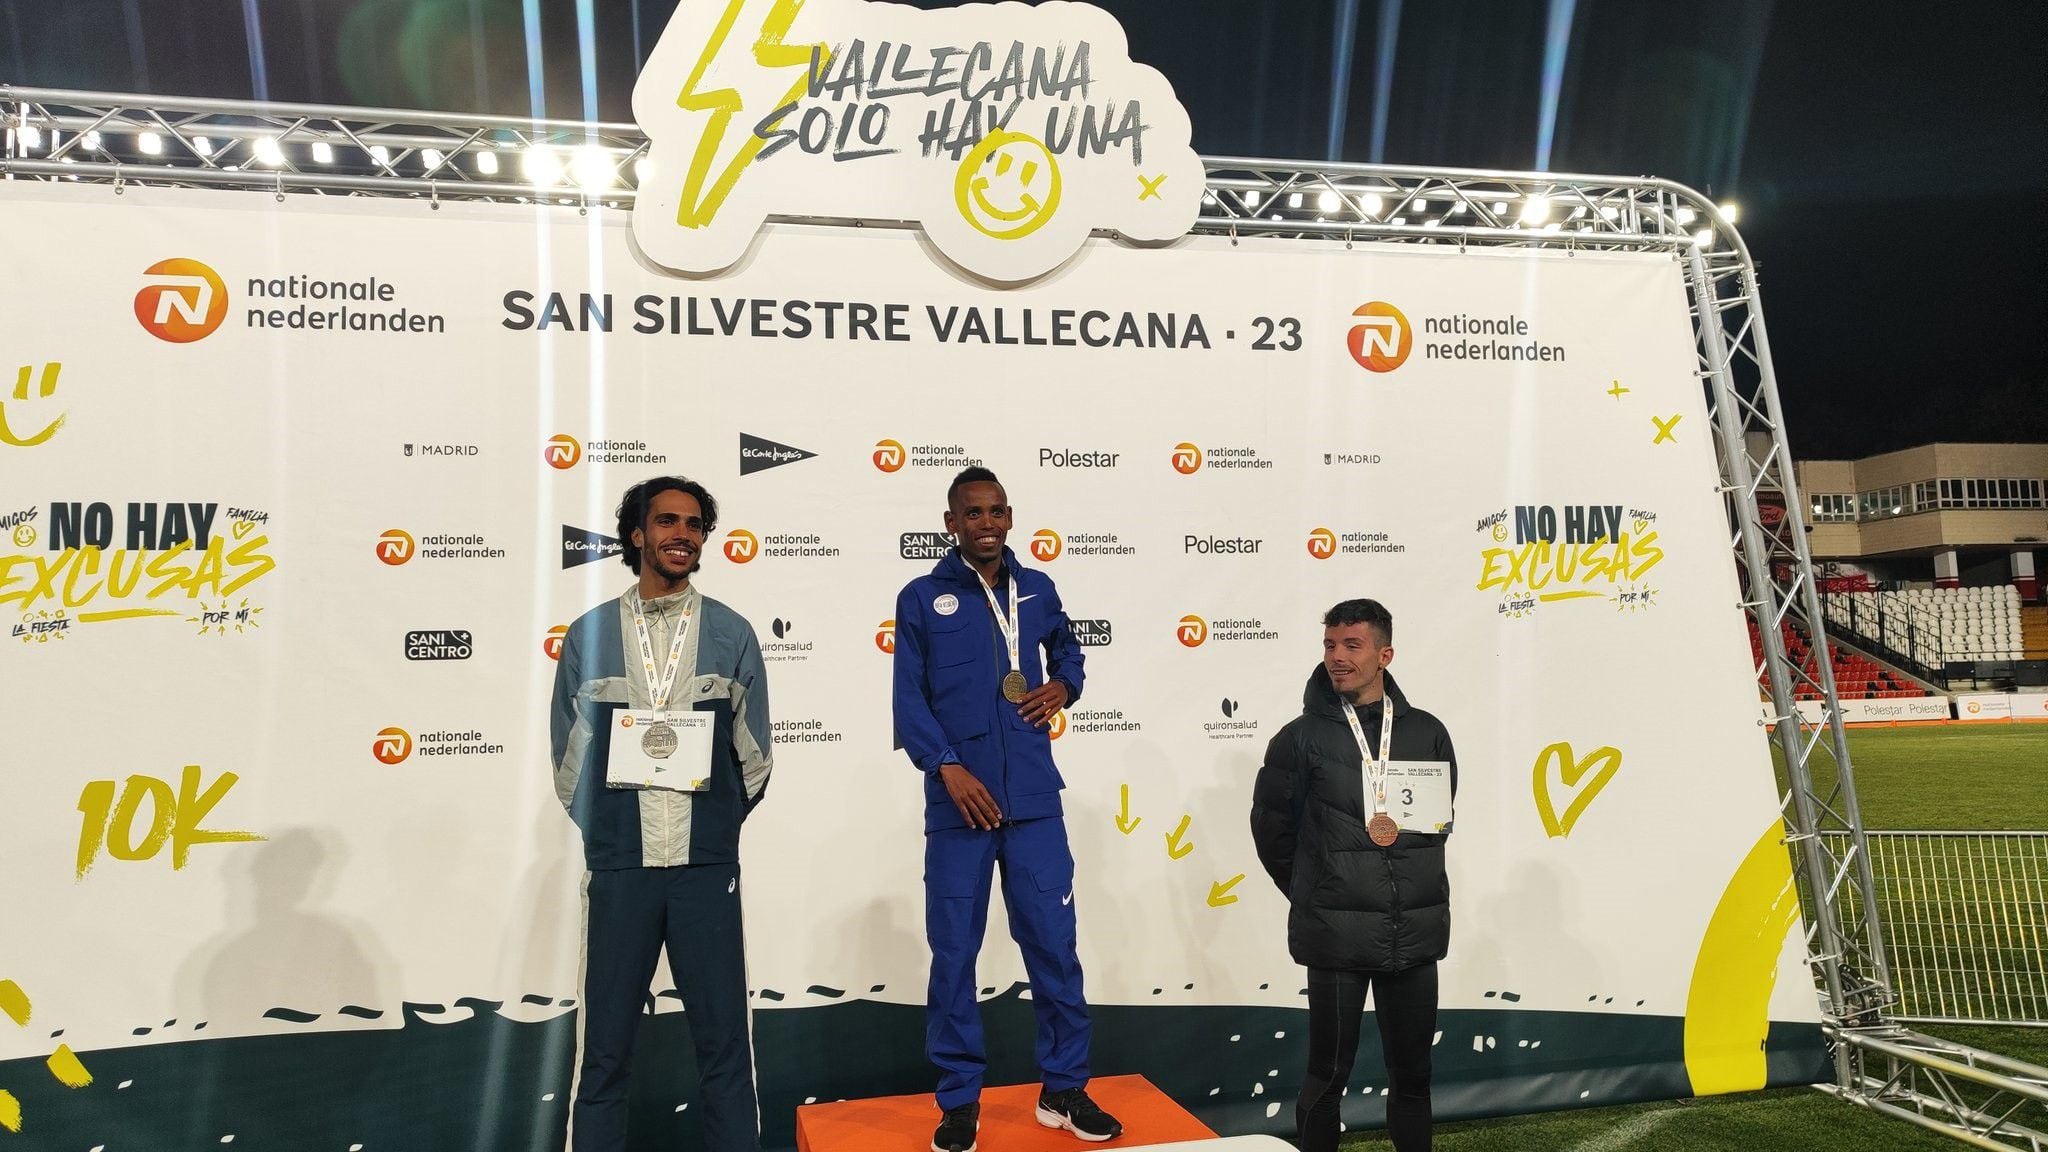 Podio de la 59ª Nationale-Nederlanden San Silvestre Vallecana 2023, con triunfo para el atleta etíope Berihu Aregawi con los españoles Mo Katir y Aarón Las Heras en segunda y tercera posición.